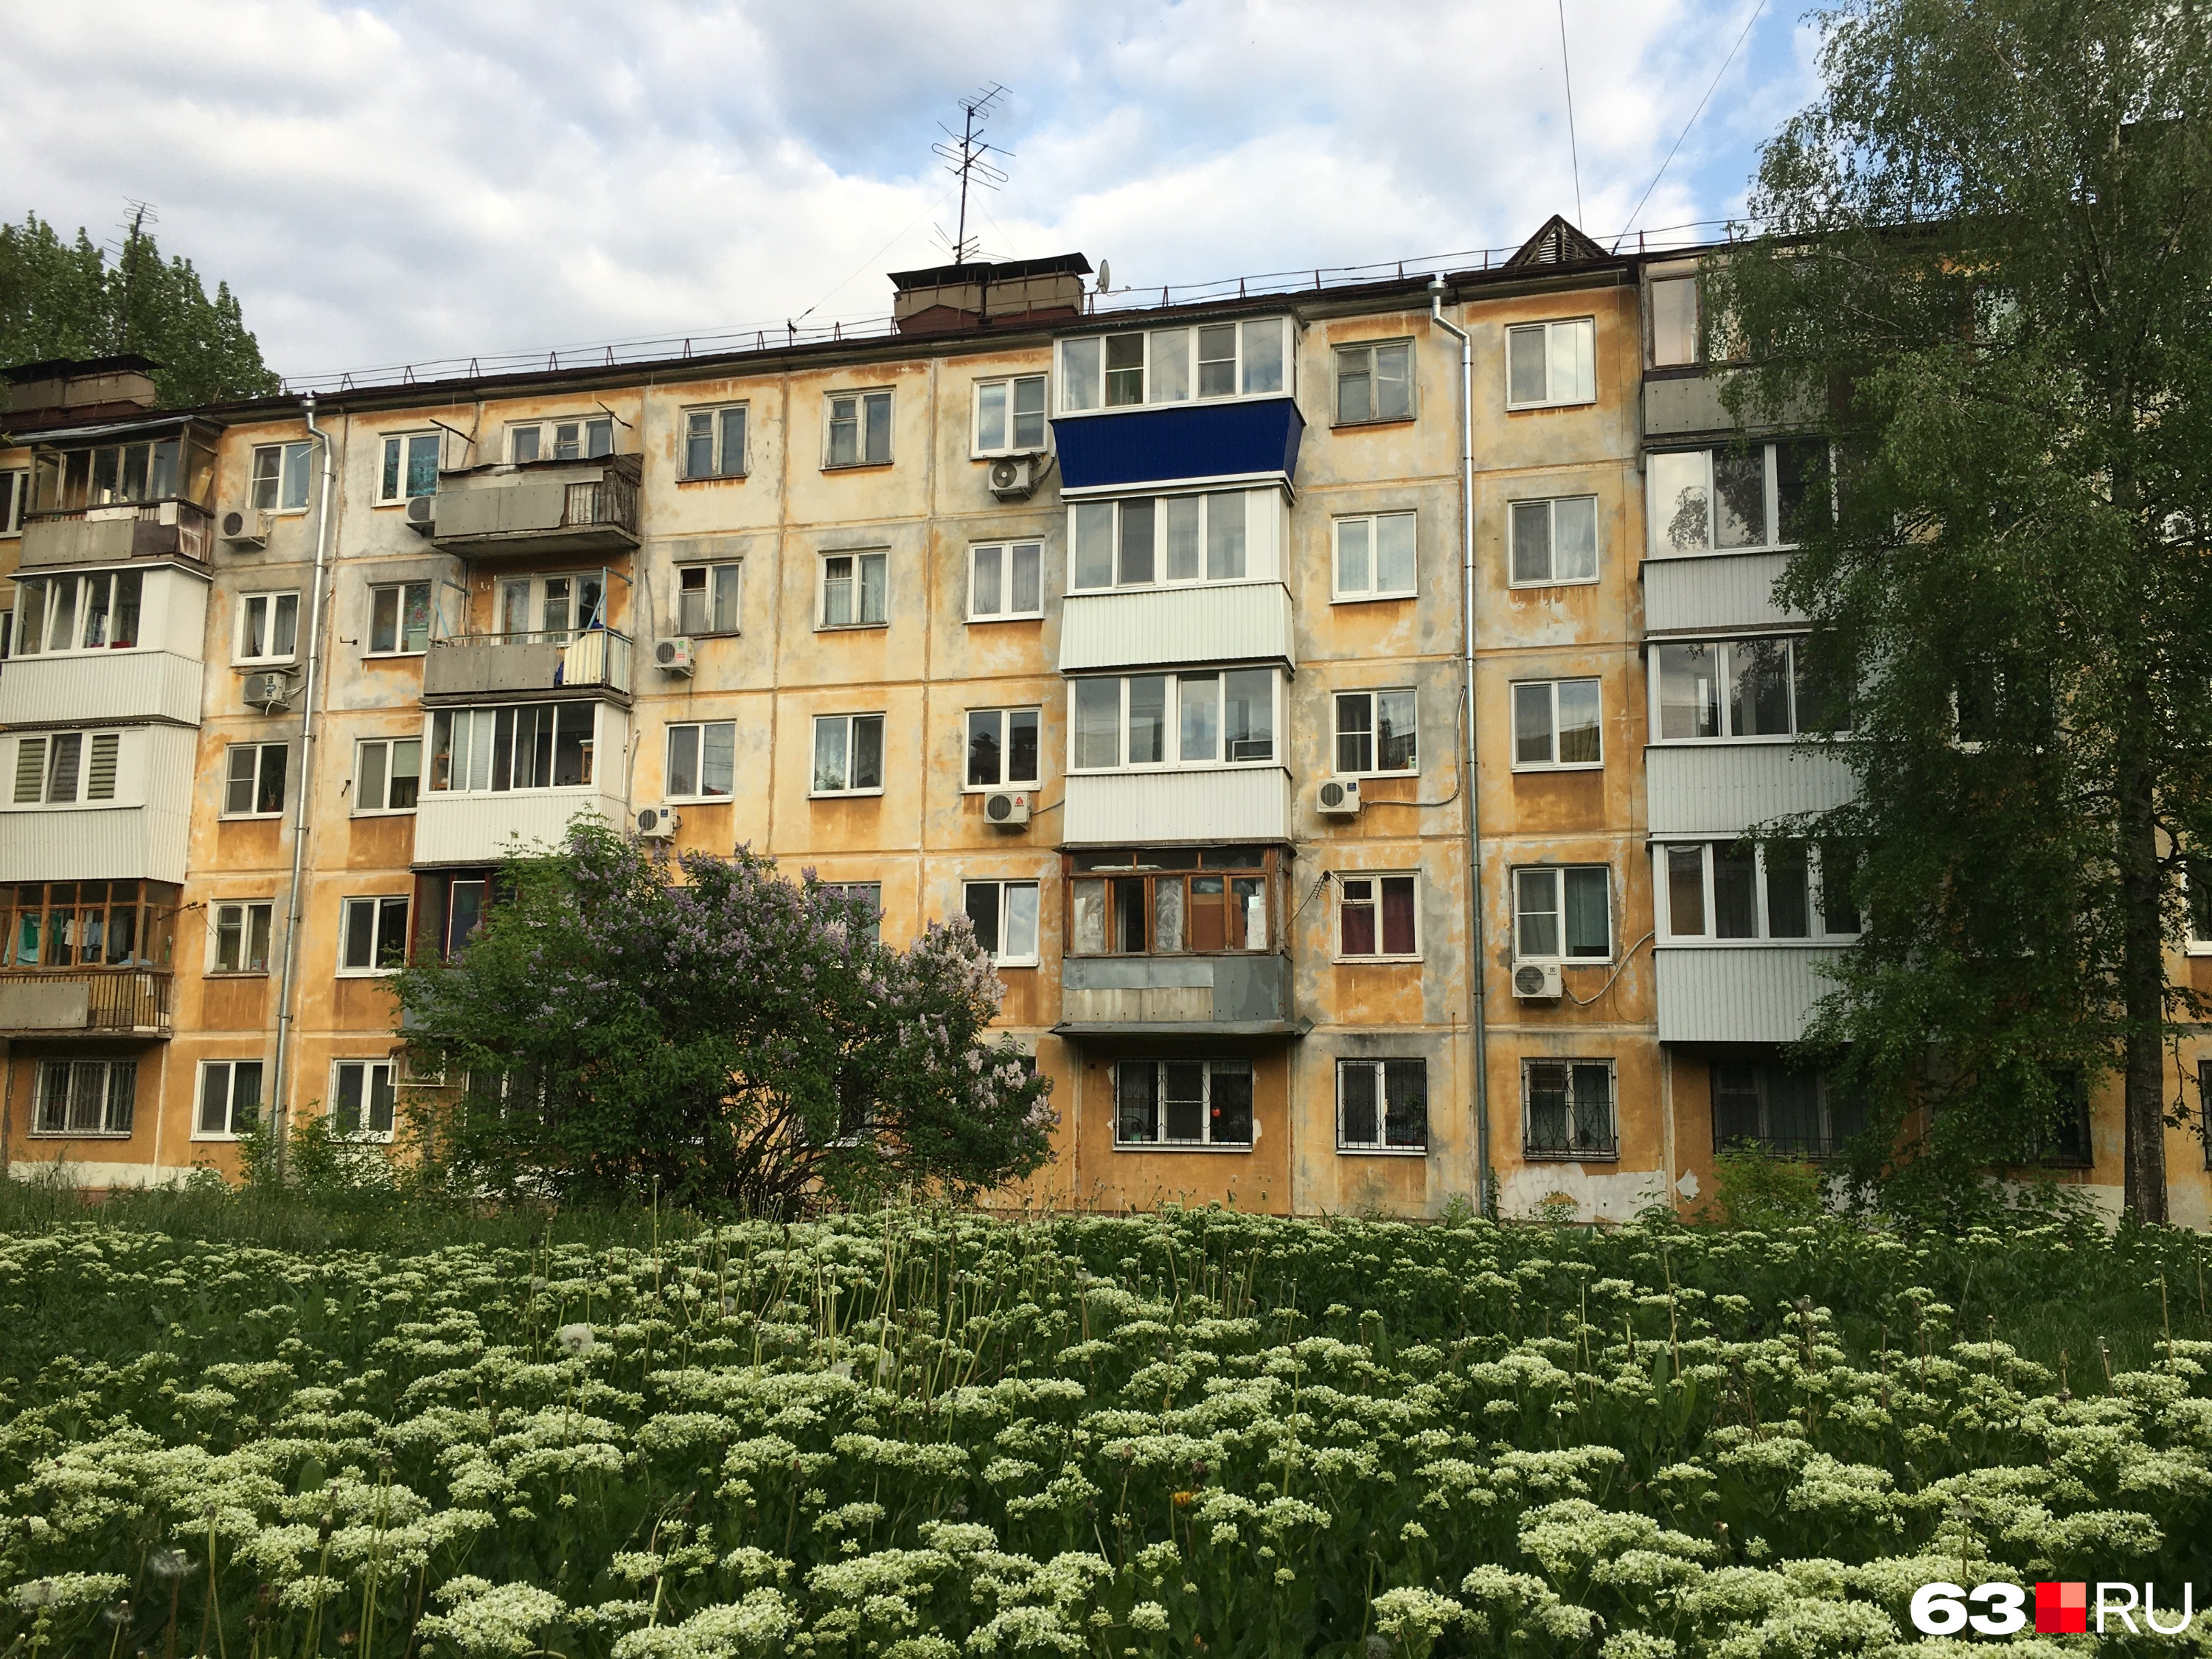 Цена на квадратный метр жилья в хрущевках — около <nobr class="_">90 000</nobr> рублей